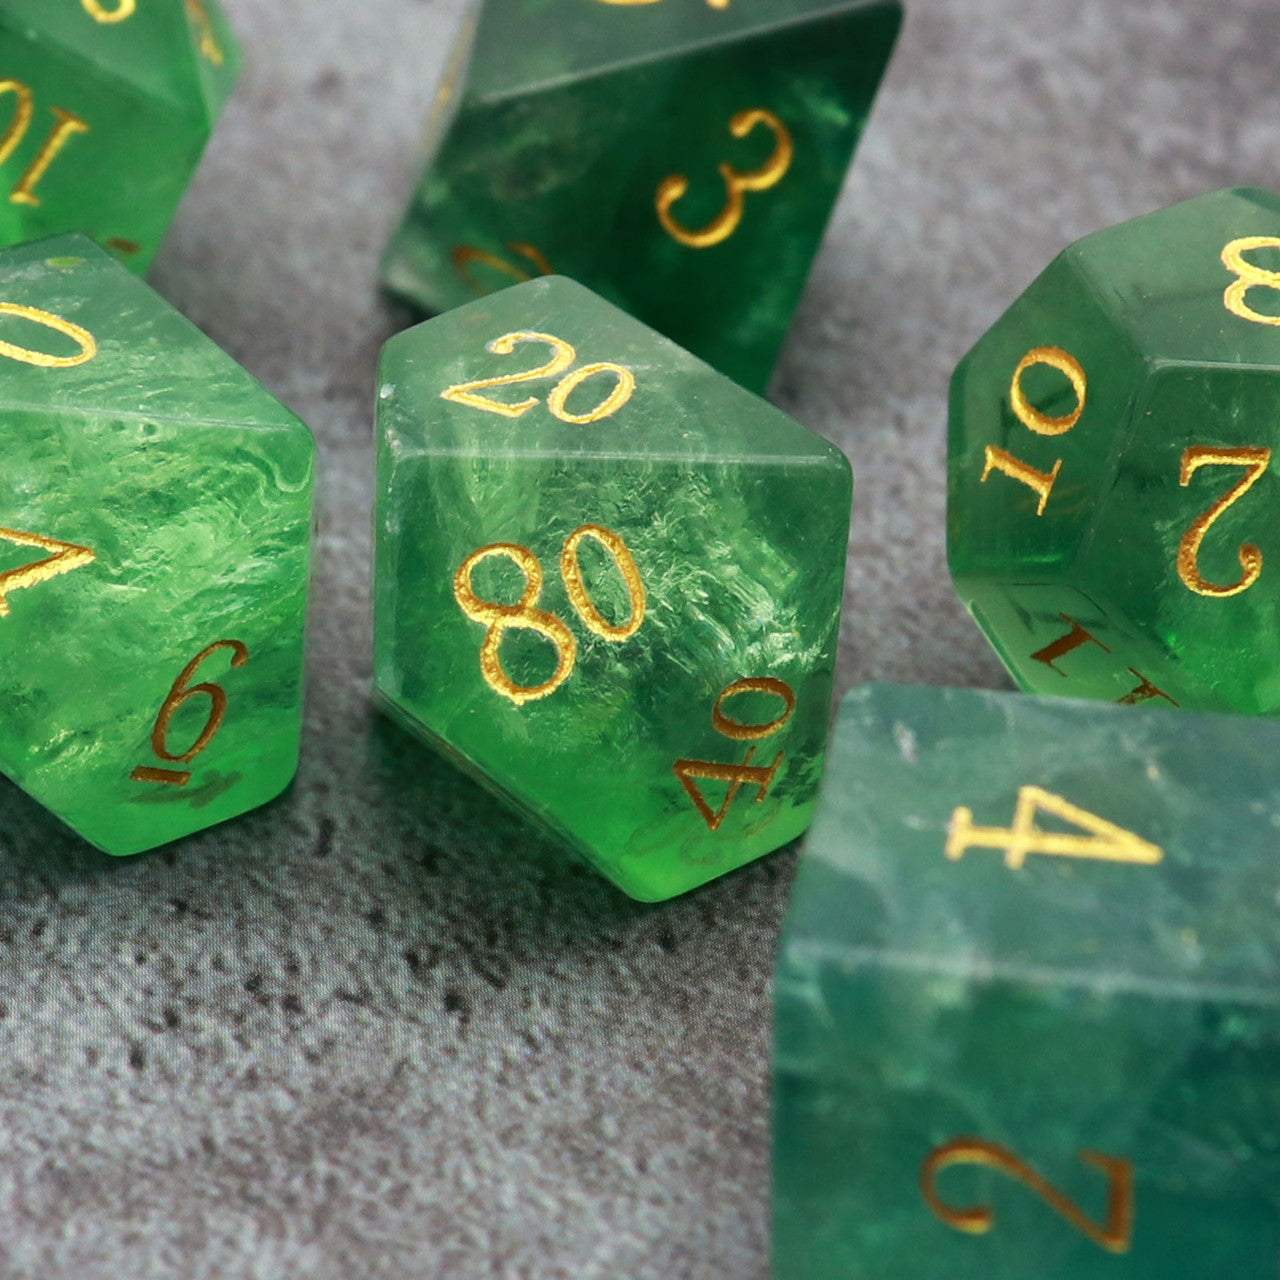 green fluorite dice, green dice, fluorite dice